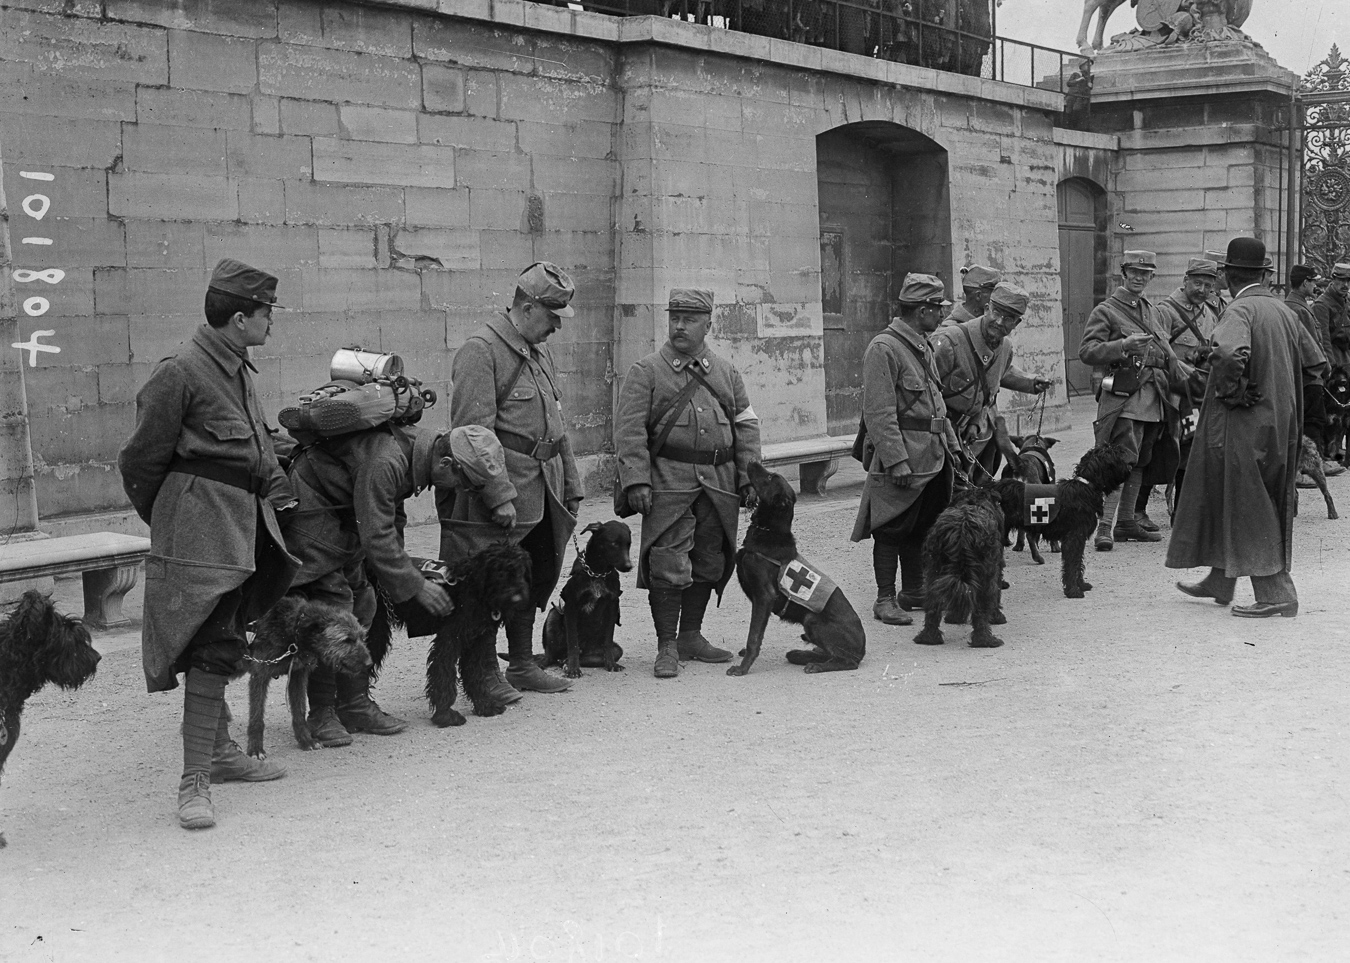 Guerre 1914-1918. Revue aux Tuileries d'une section de chiens sanitaires partant pour le front. Paris (Ier arr.), 1915.